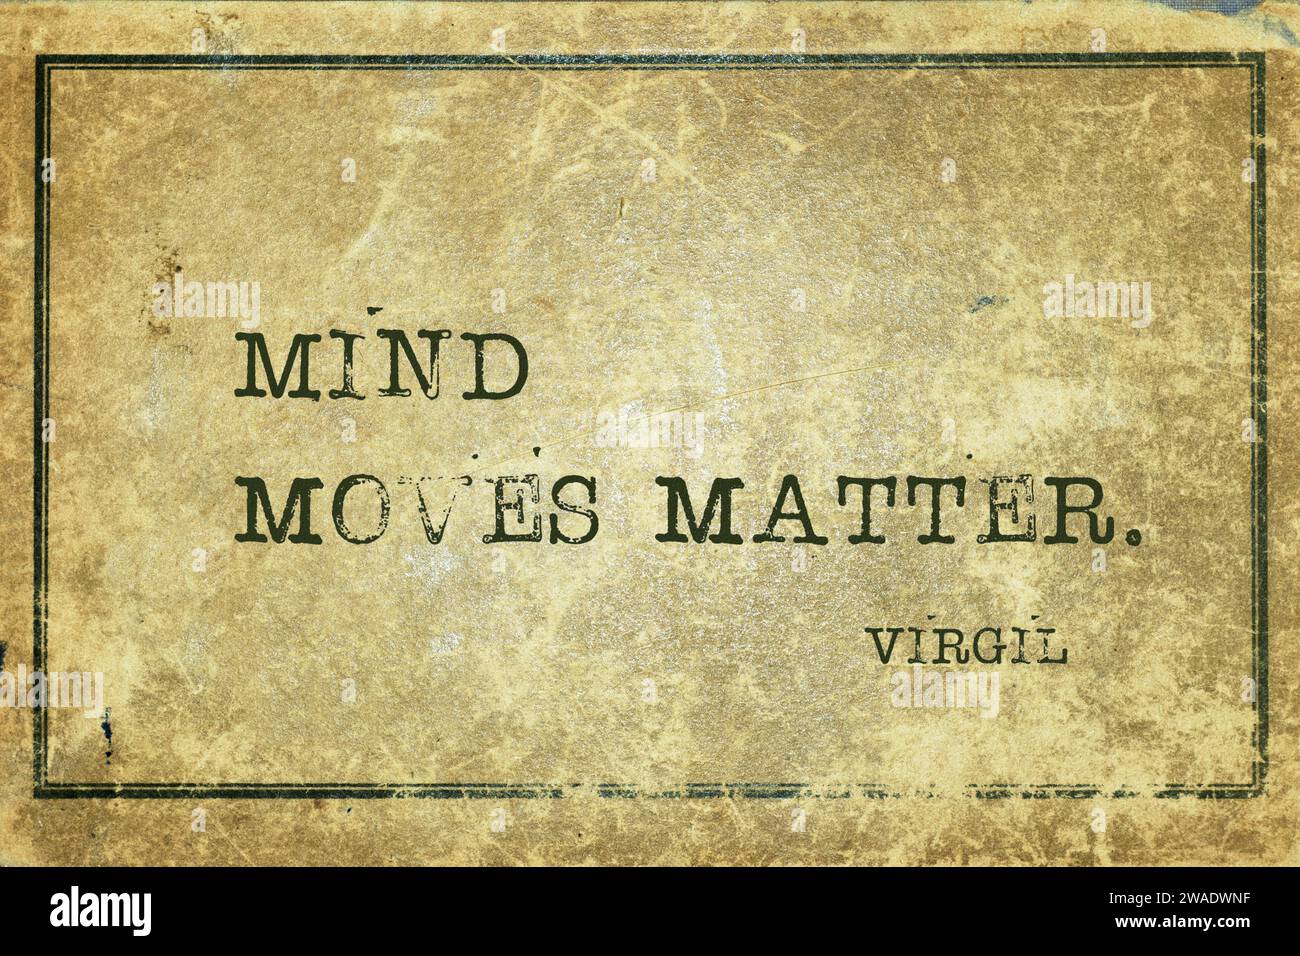 La mente muove la materia - citazione dell'antico poeta romano Virgil stampata su un cartoncino vintage grunge Foto Stock